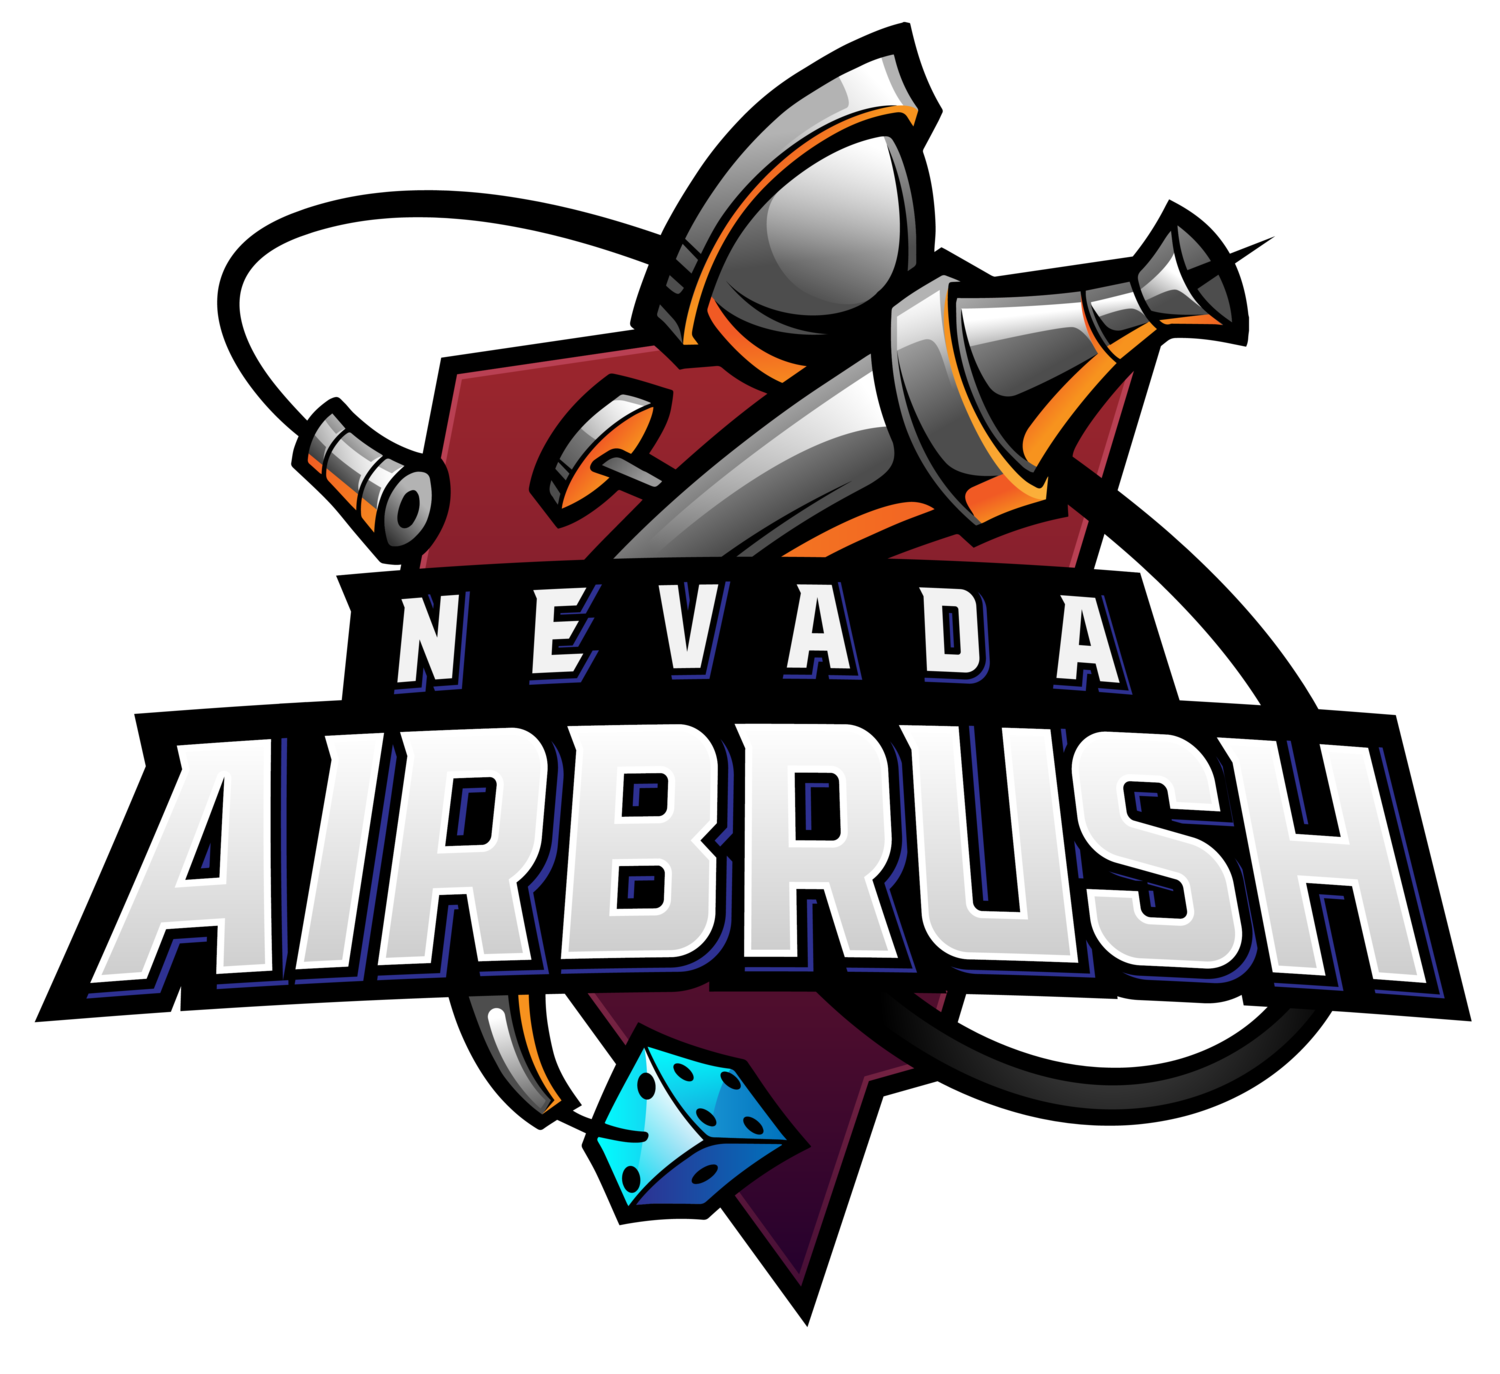 Company logo of Nevada Airbrush